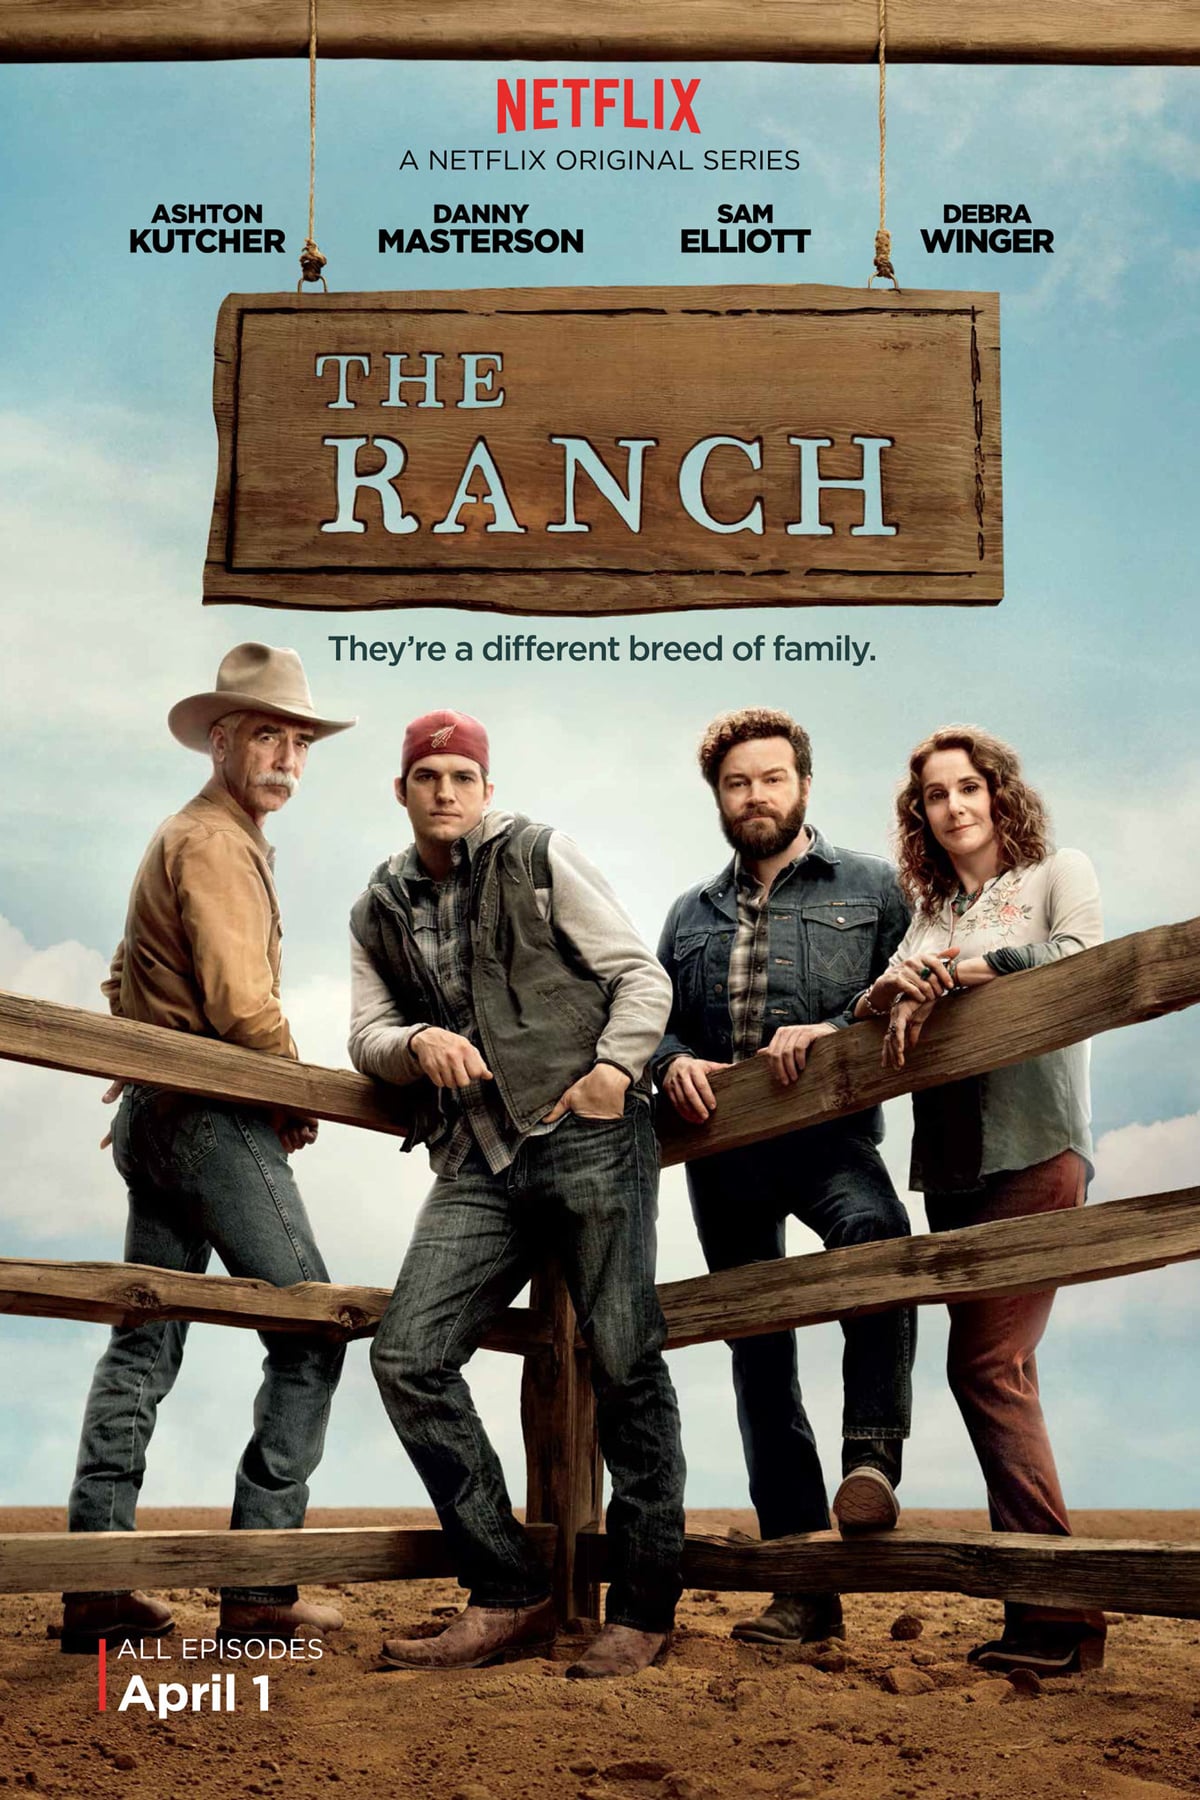 The Ranch - Saison 4